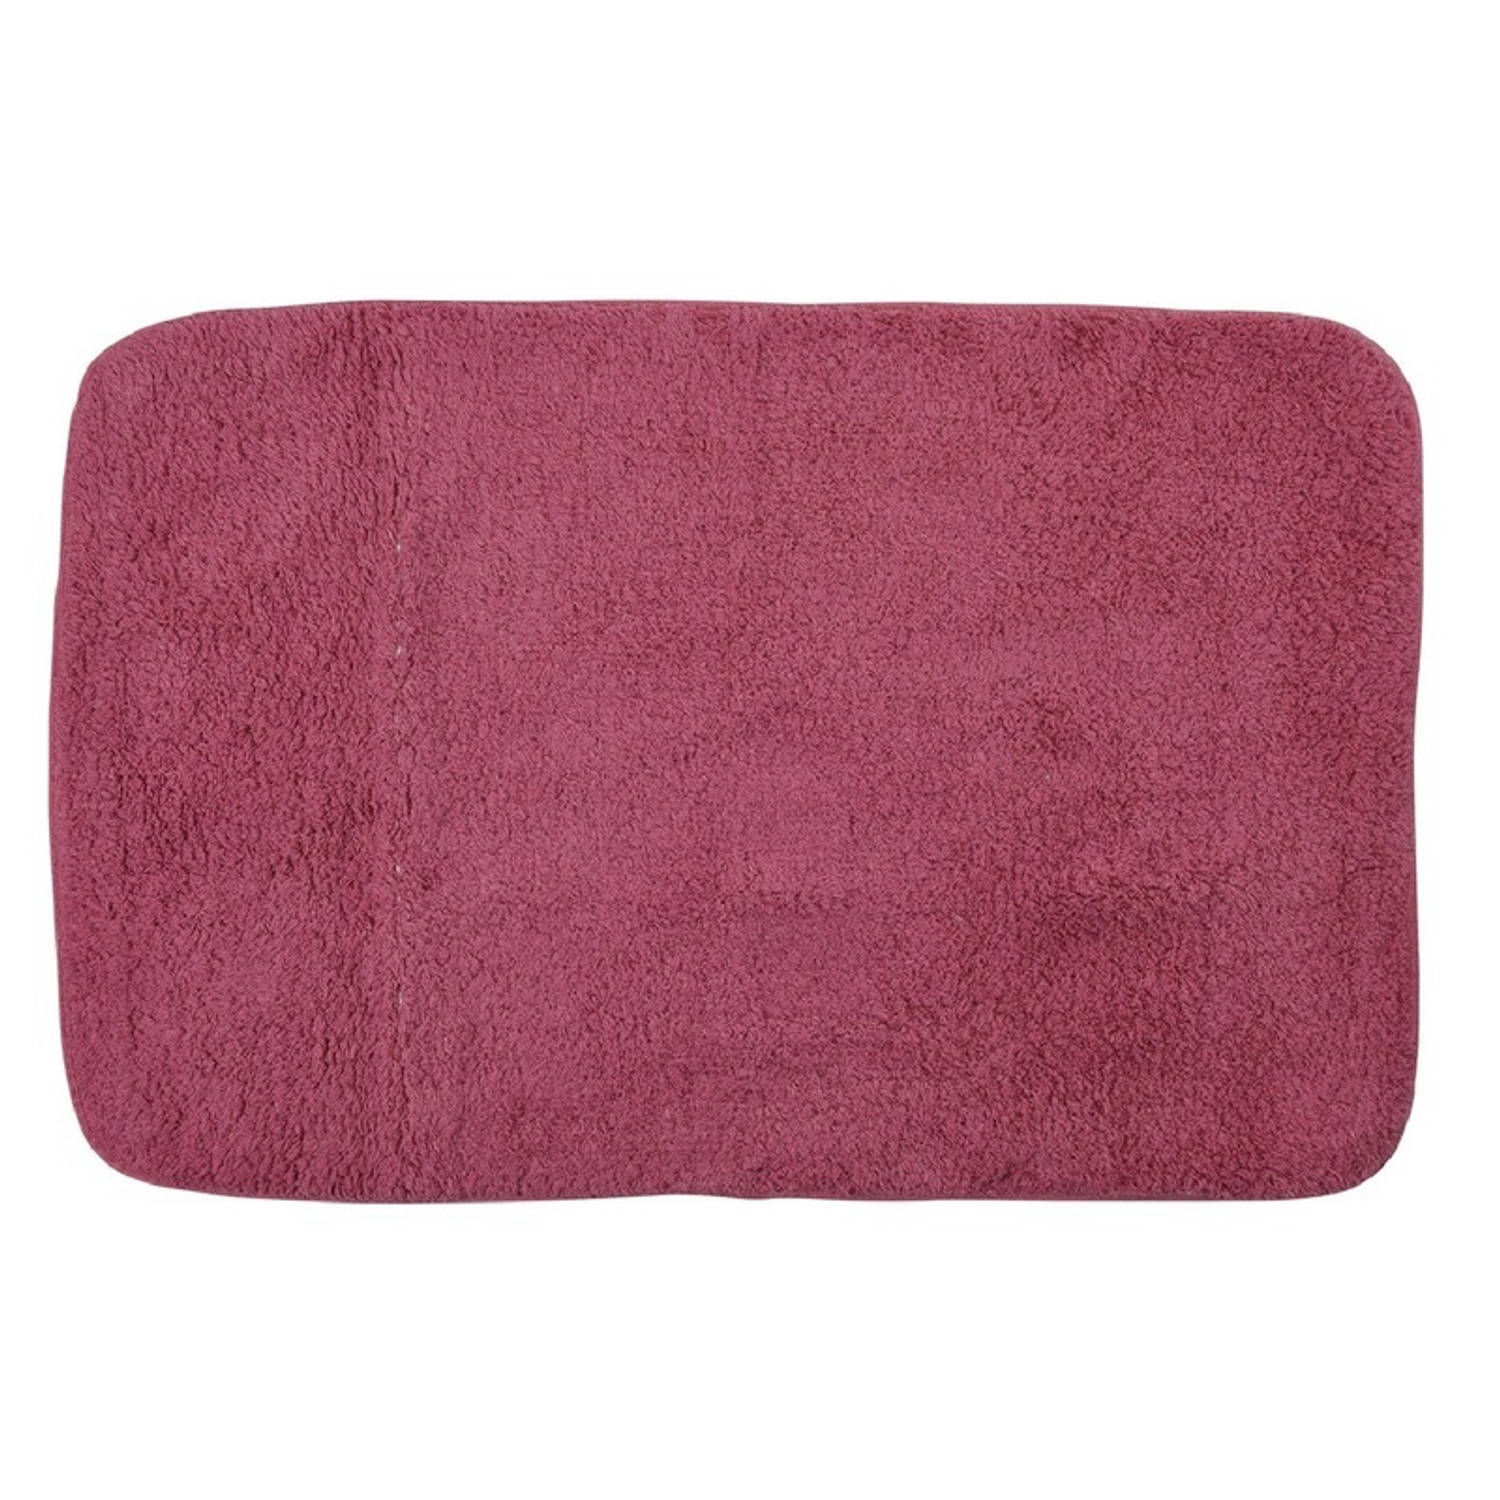 Donker roze badkamer/douche mat 90 x 60 cm - | Blokker